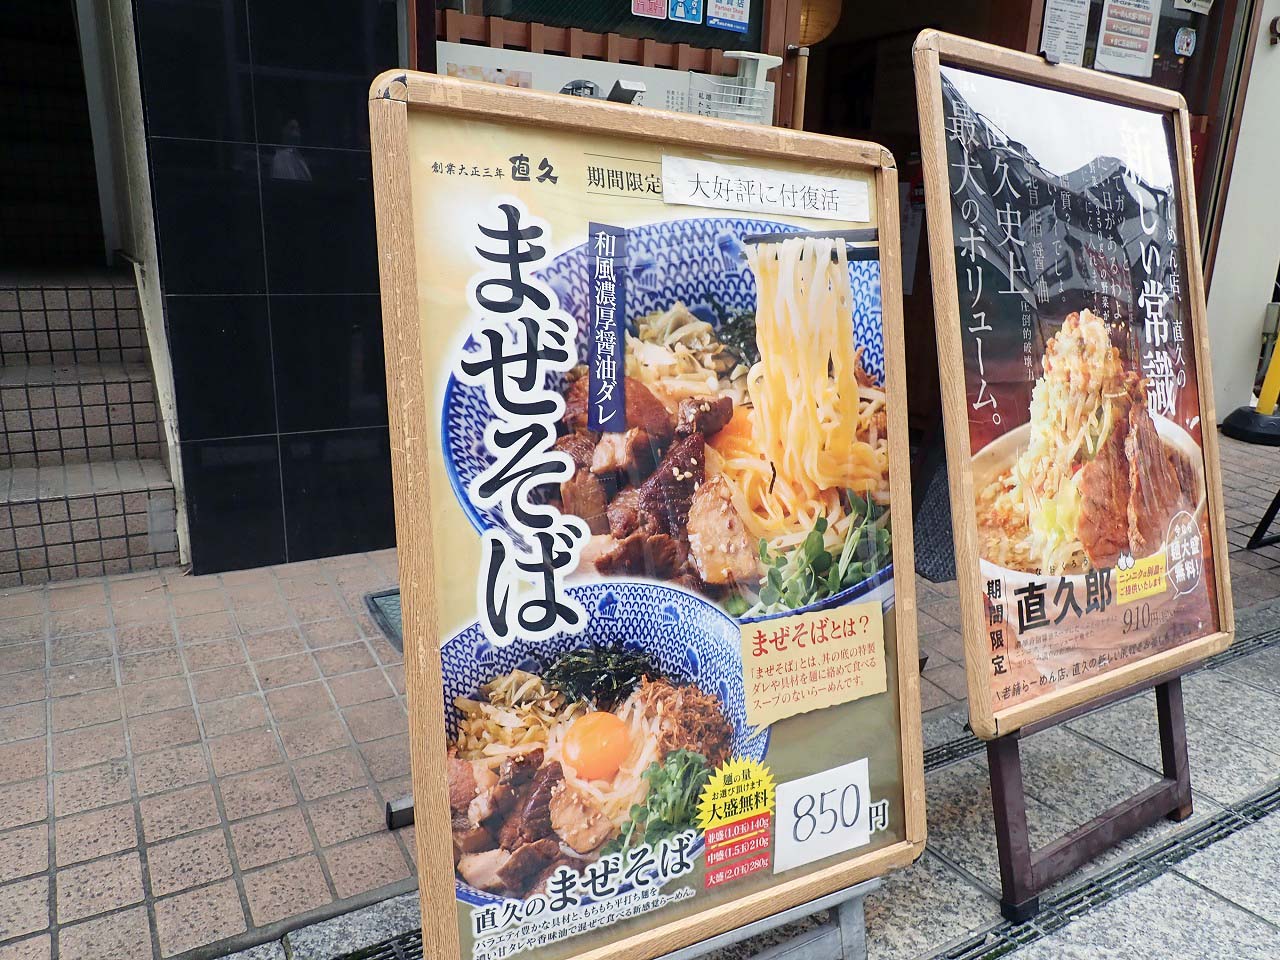 テレビでまぜそばが紹介された『麺処直久 本川越店』